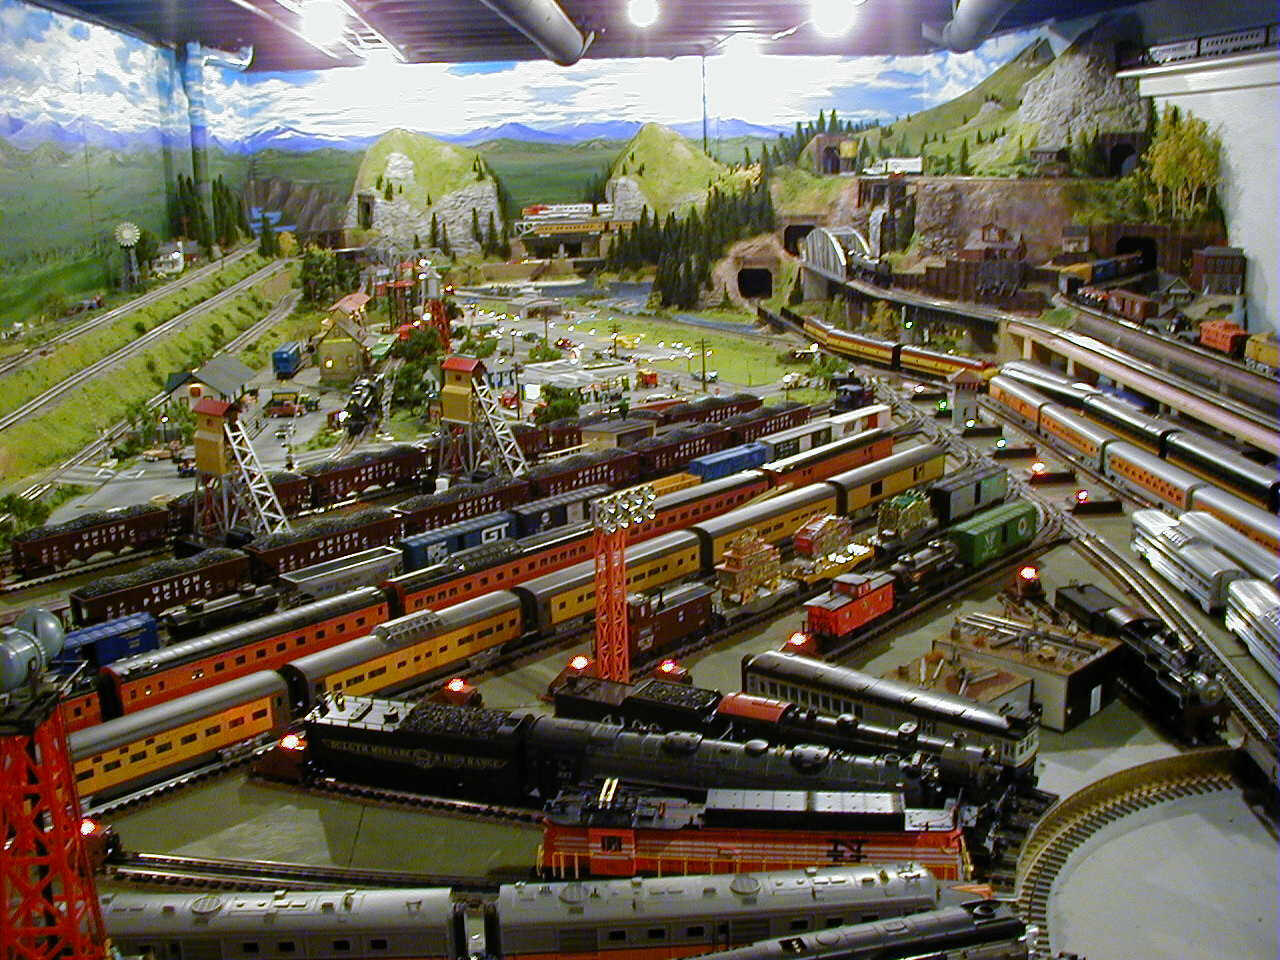  Scenery Kits harry potter model train layout o n ho Scale g z s Gauge